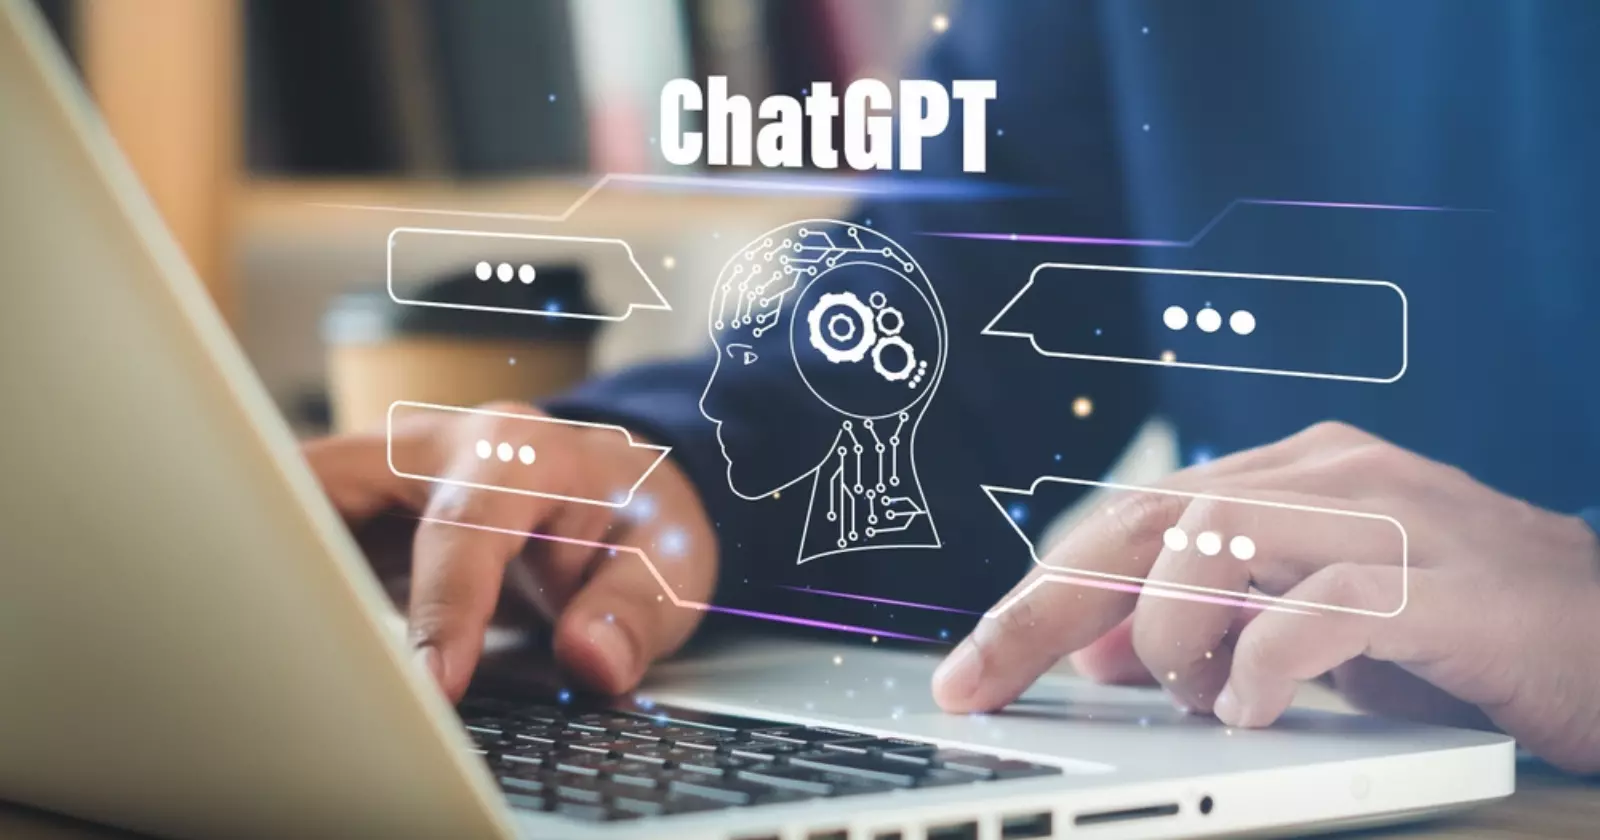 Riscurile si precautiile utilizarii ChatGPT. Protejarea datelor si confidentialitatea in era tehnologiei 3